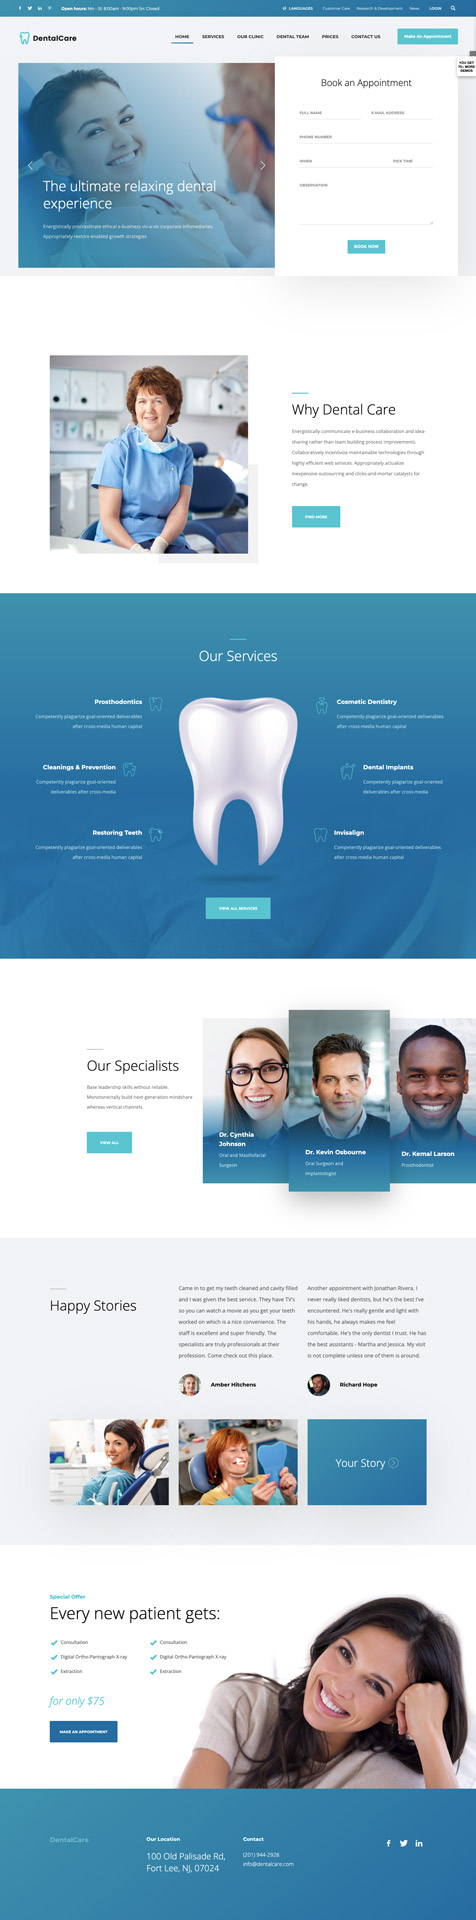 Ukázka webu pro zubaře